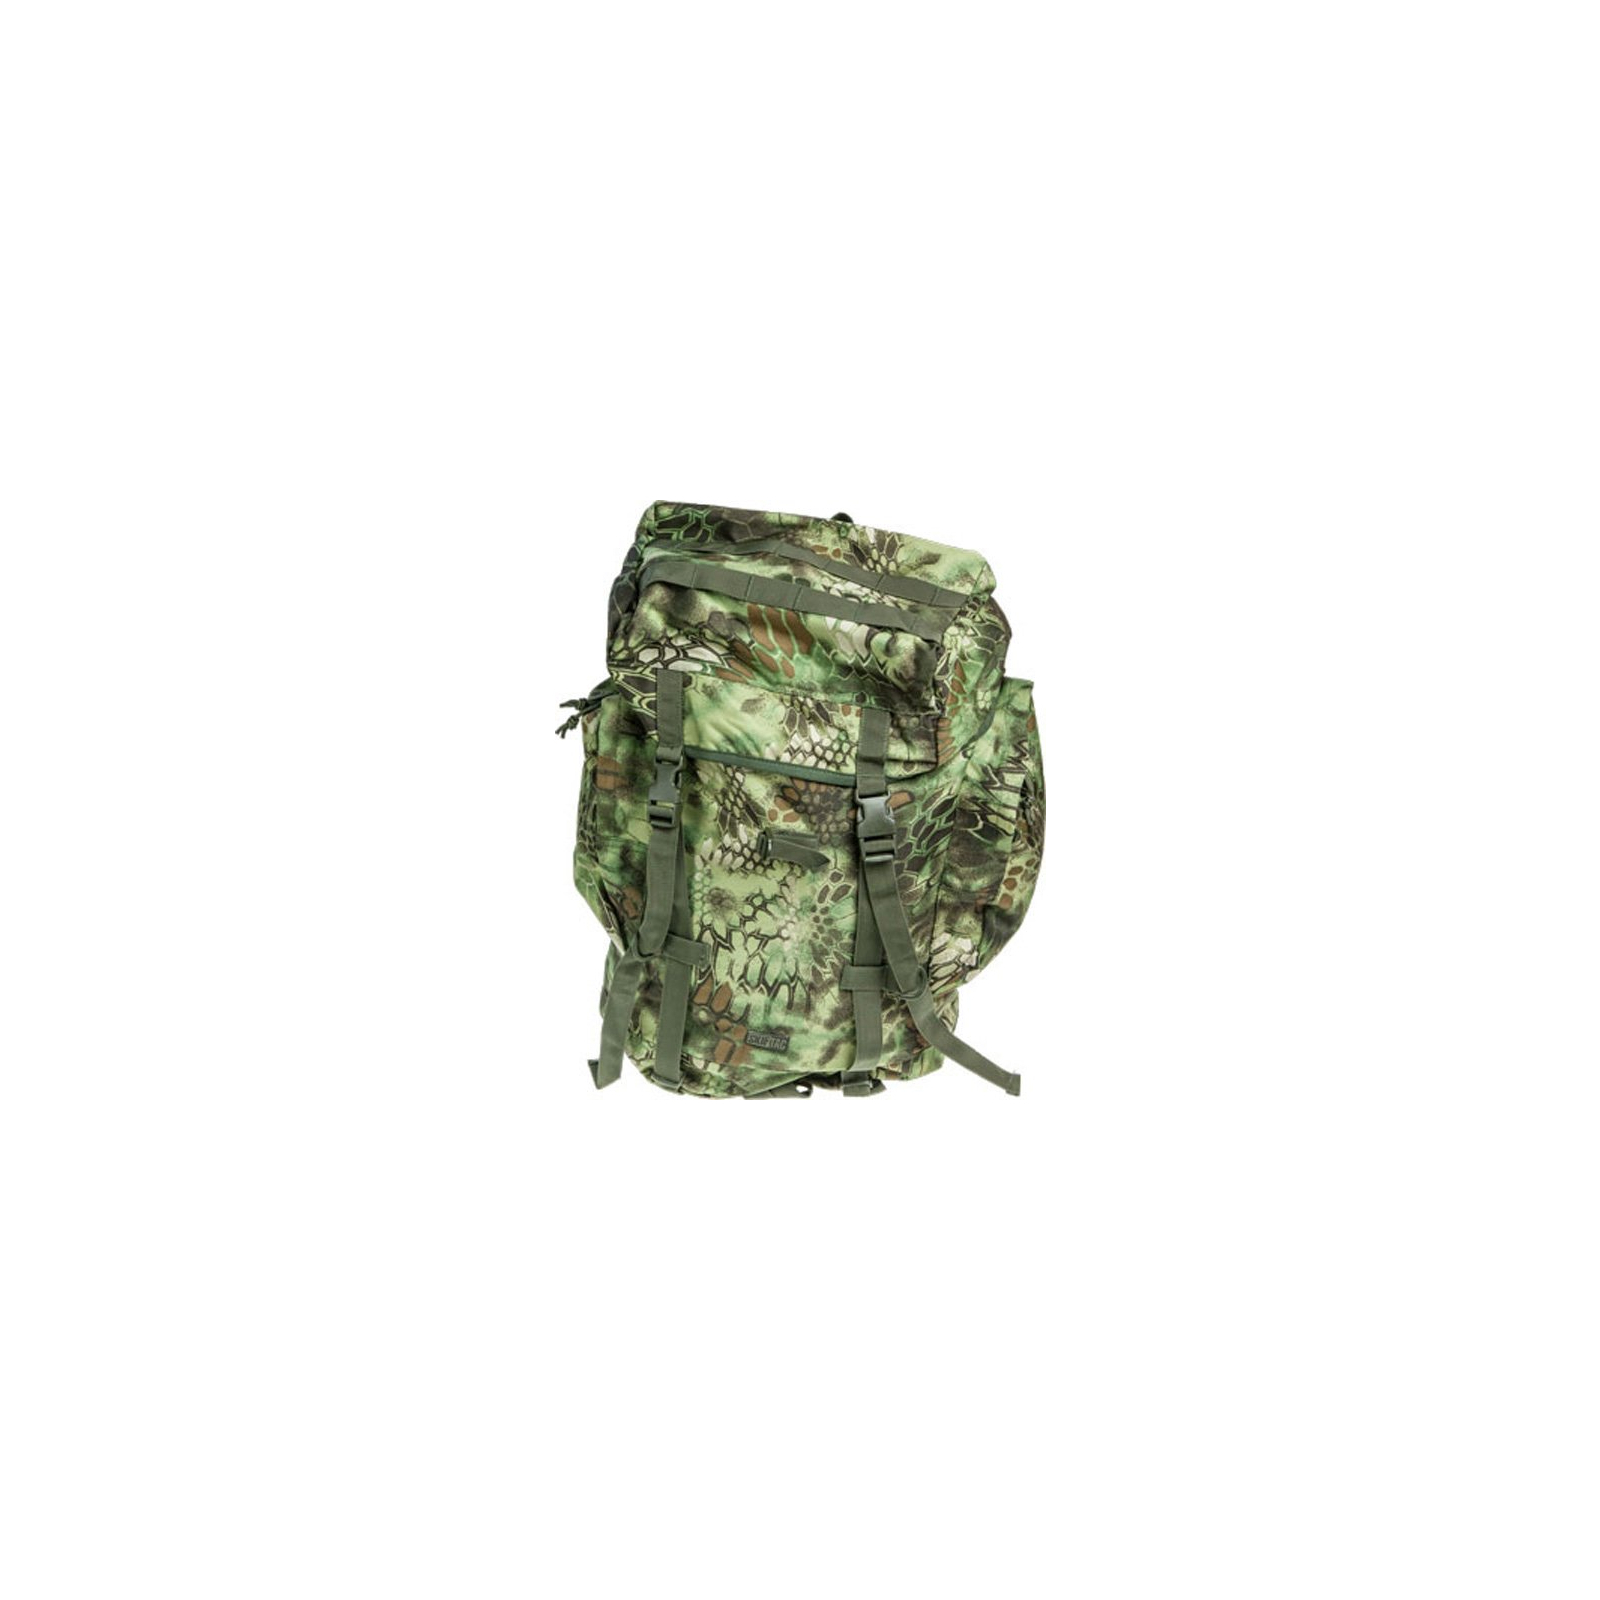 Рюкзак туристический Skif Tac тактический полевой 45 литров kryptek green (GB0075-KGR)